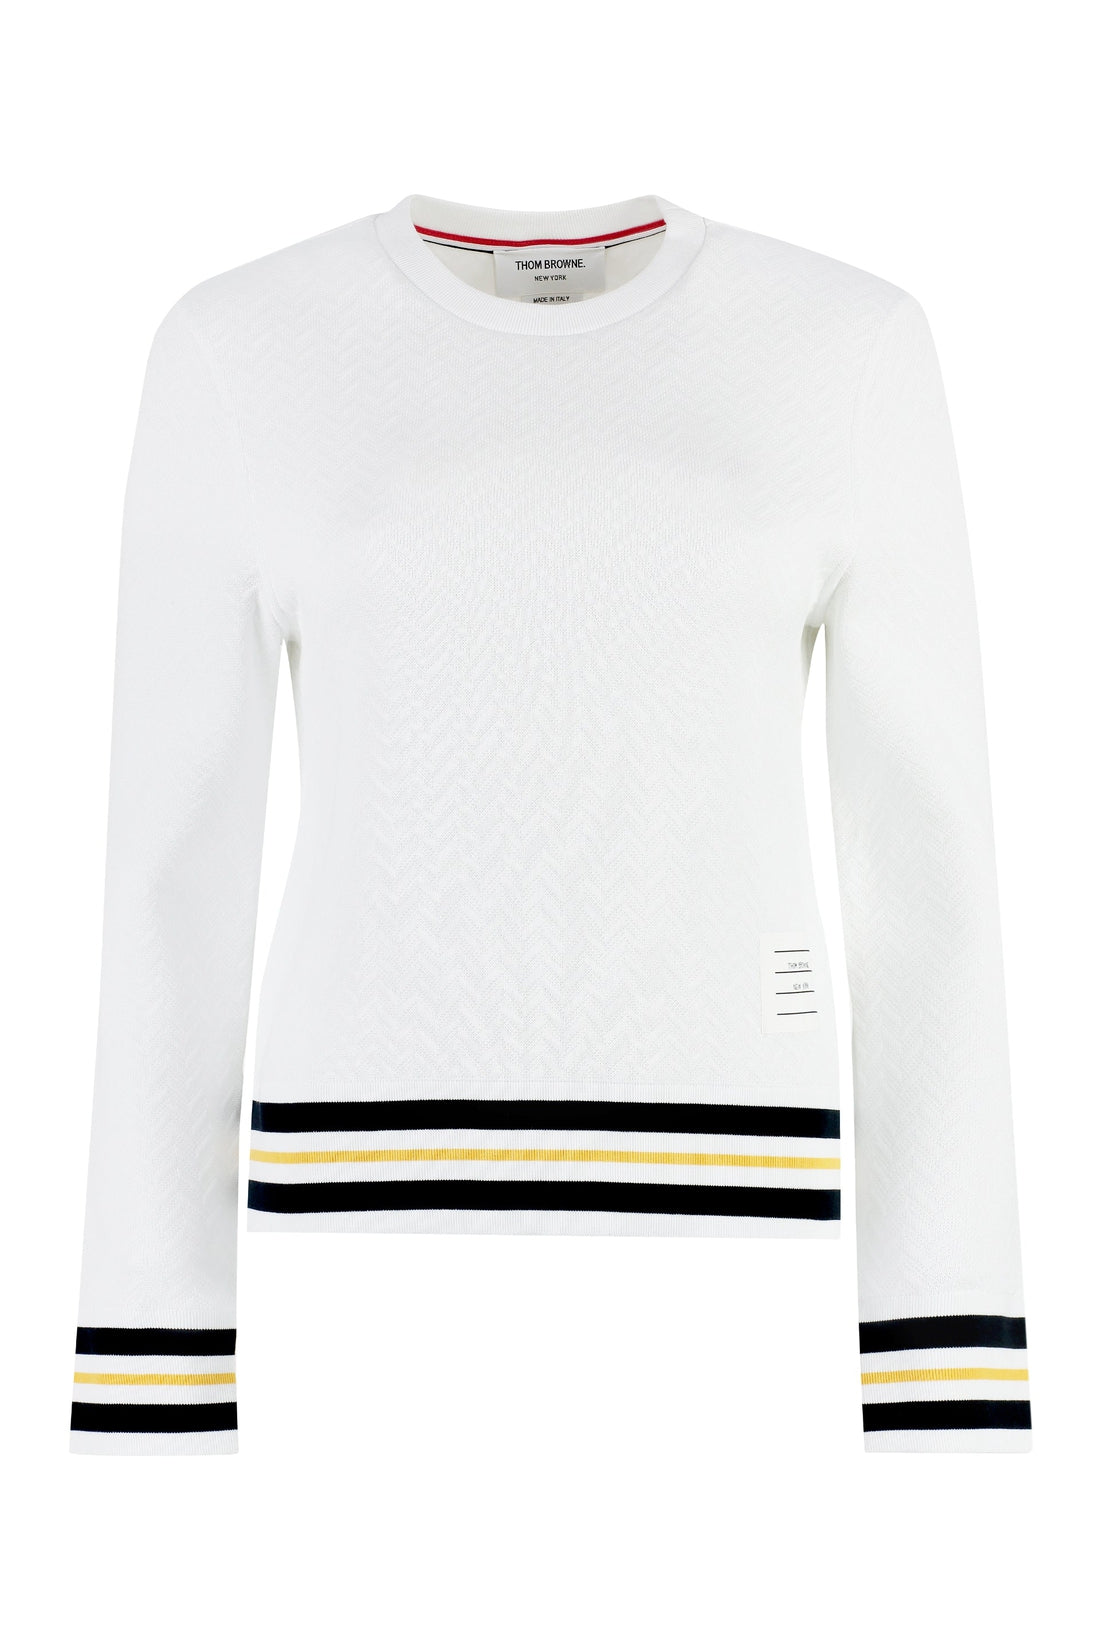 Thom Browne-OUTLET-SALE-Cotton-blend sweatshirt-ARCHIVIST